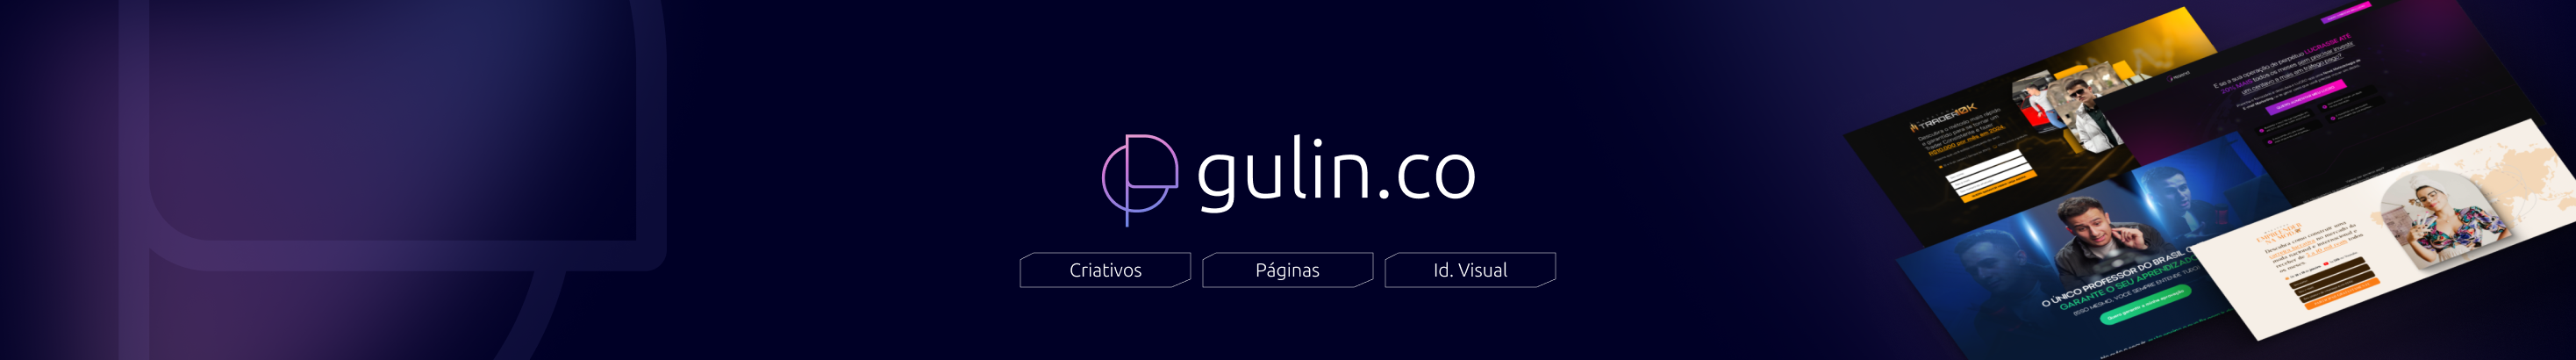 Pedro Gulin's profile banner